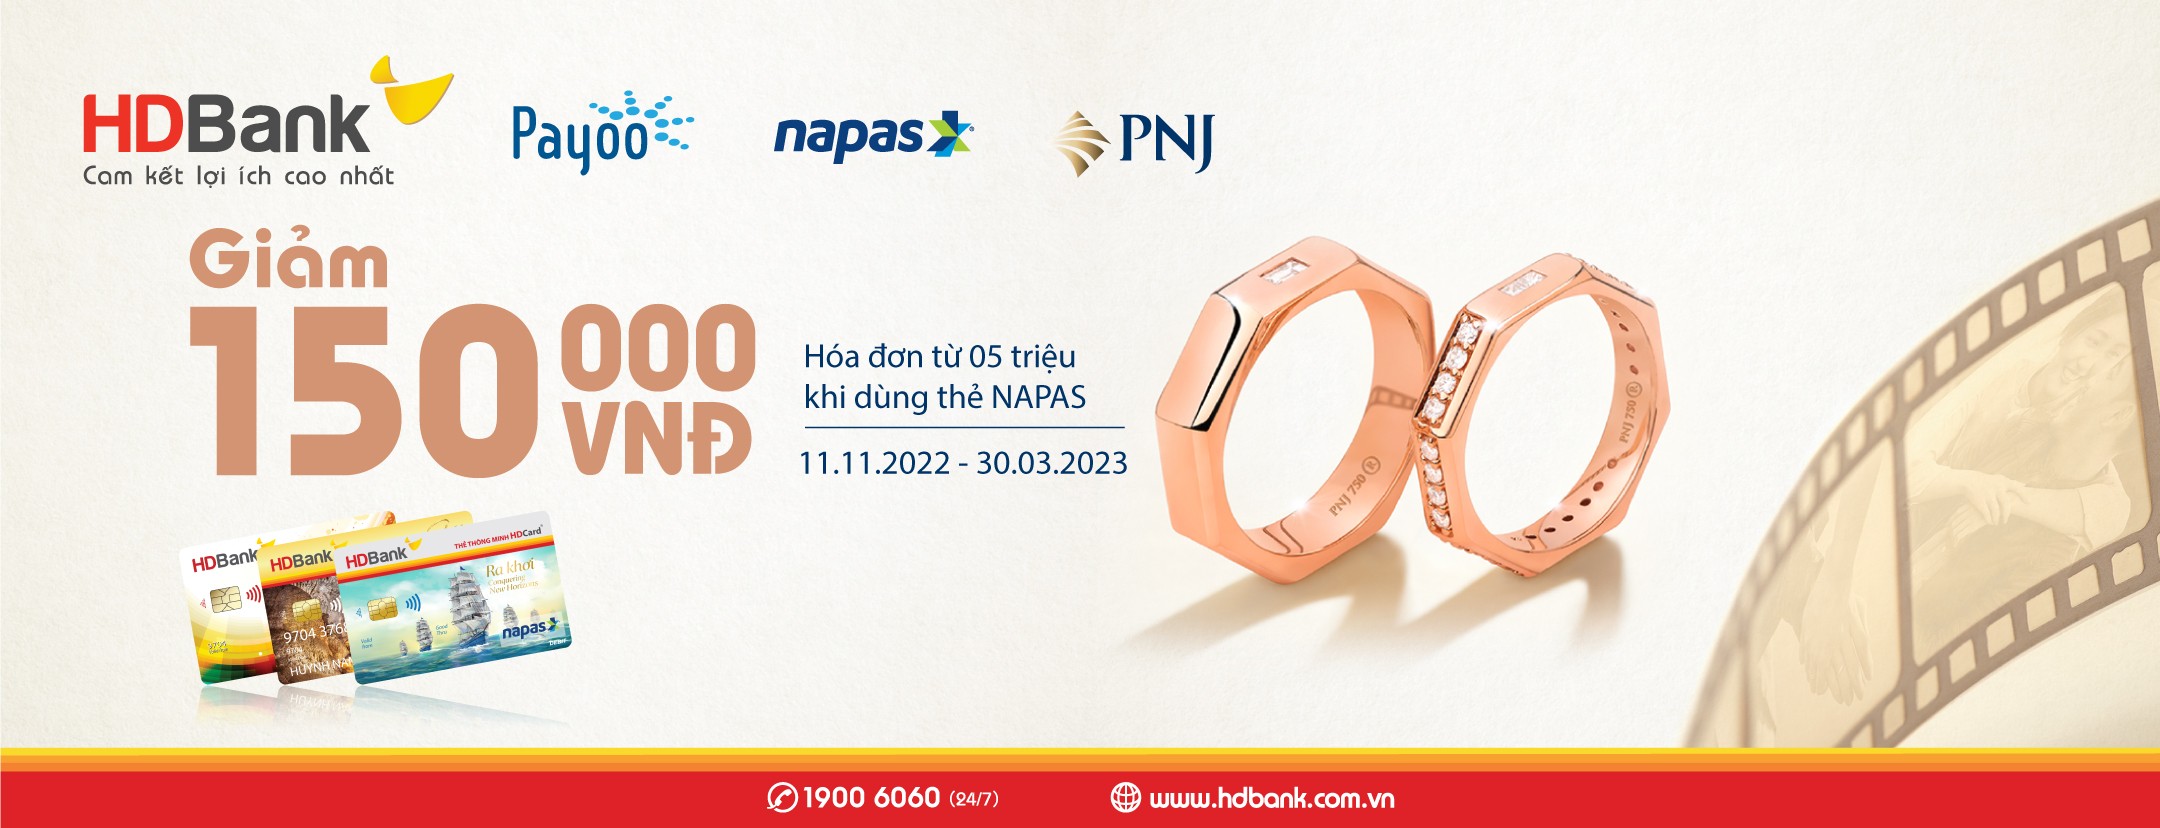 Giảm 150.000 VND tại PNJ khi thanh toán bằng thẻ HDBank Napas